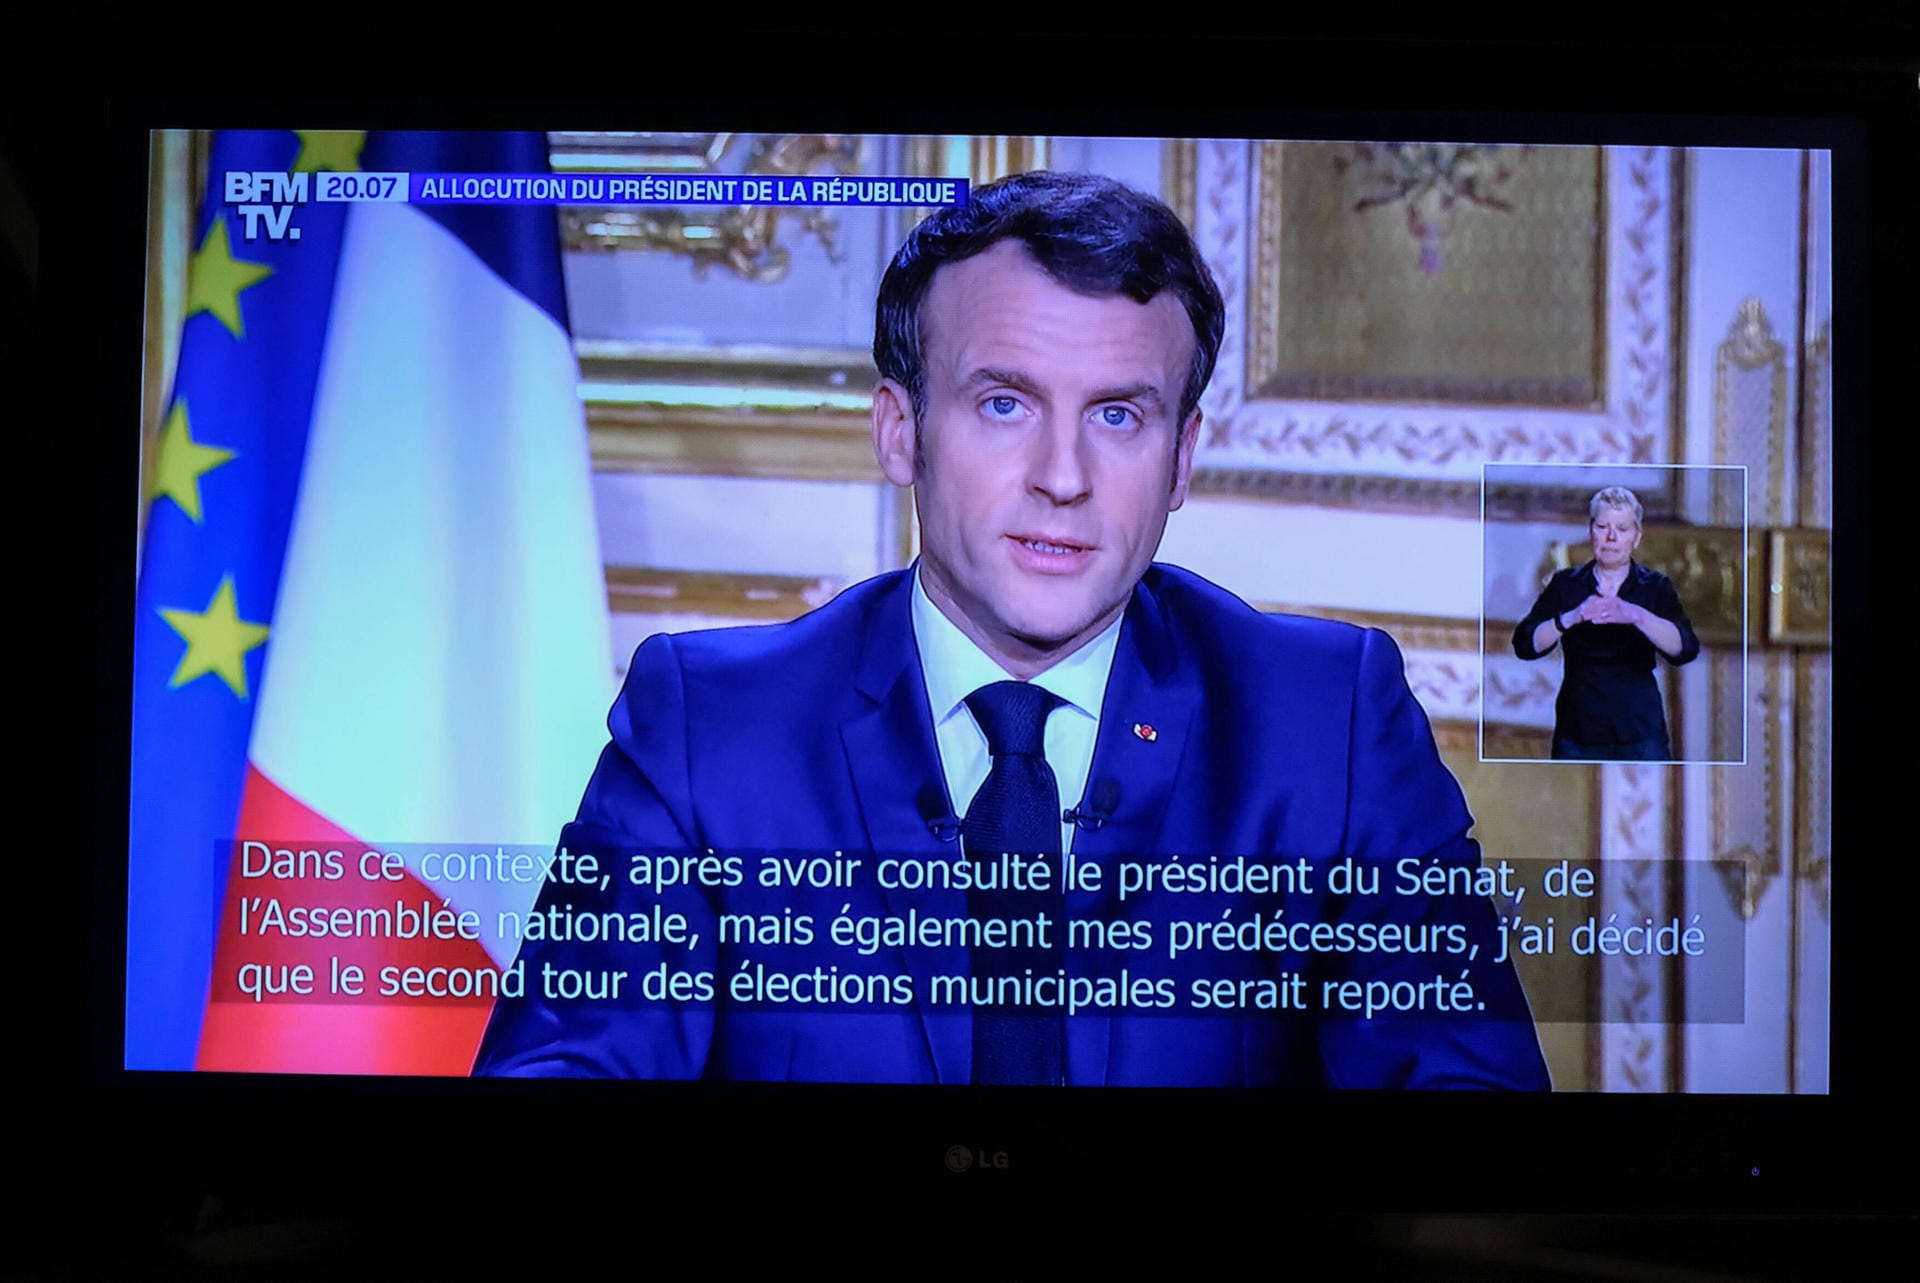 Nachdem Frankreich am 9. Februar 2020 die ersten Corona-Fälle meldet, ruft Macron am 16. März 2020 den ersten Lockdown aus. "Wir sind im Krieg", erklärt er in einer Fernsehansprache.